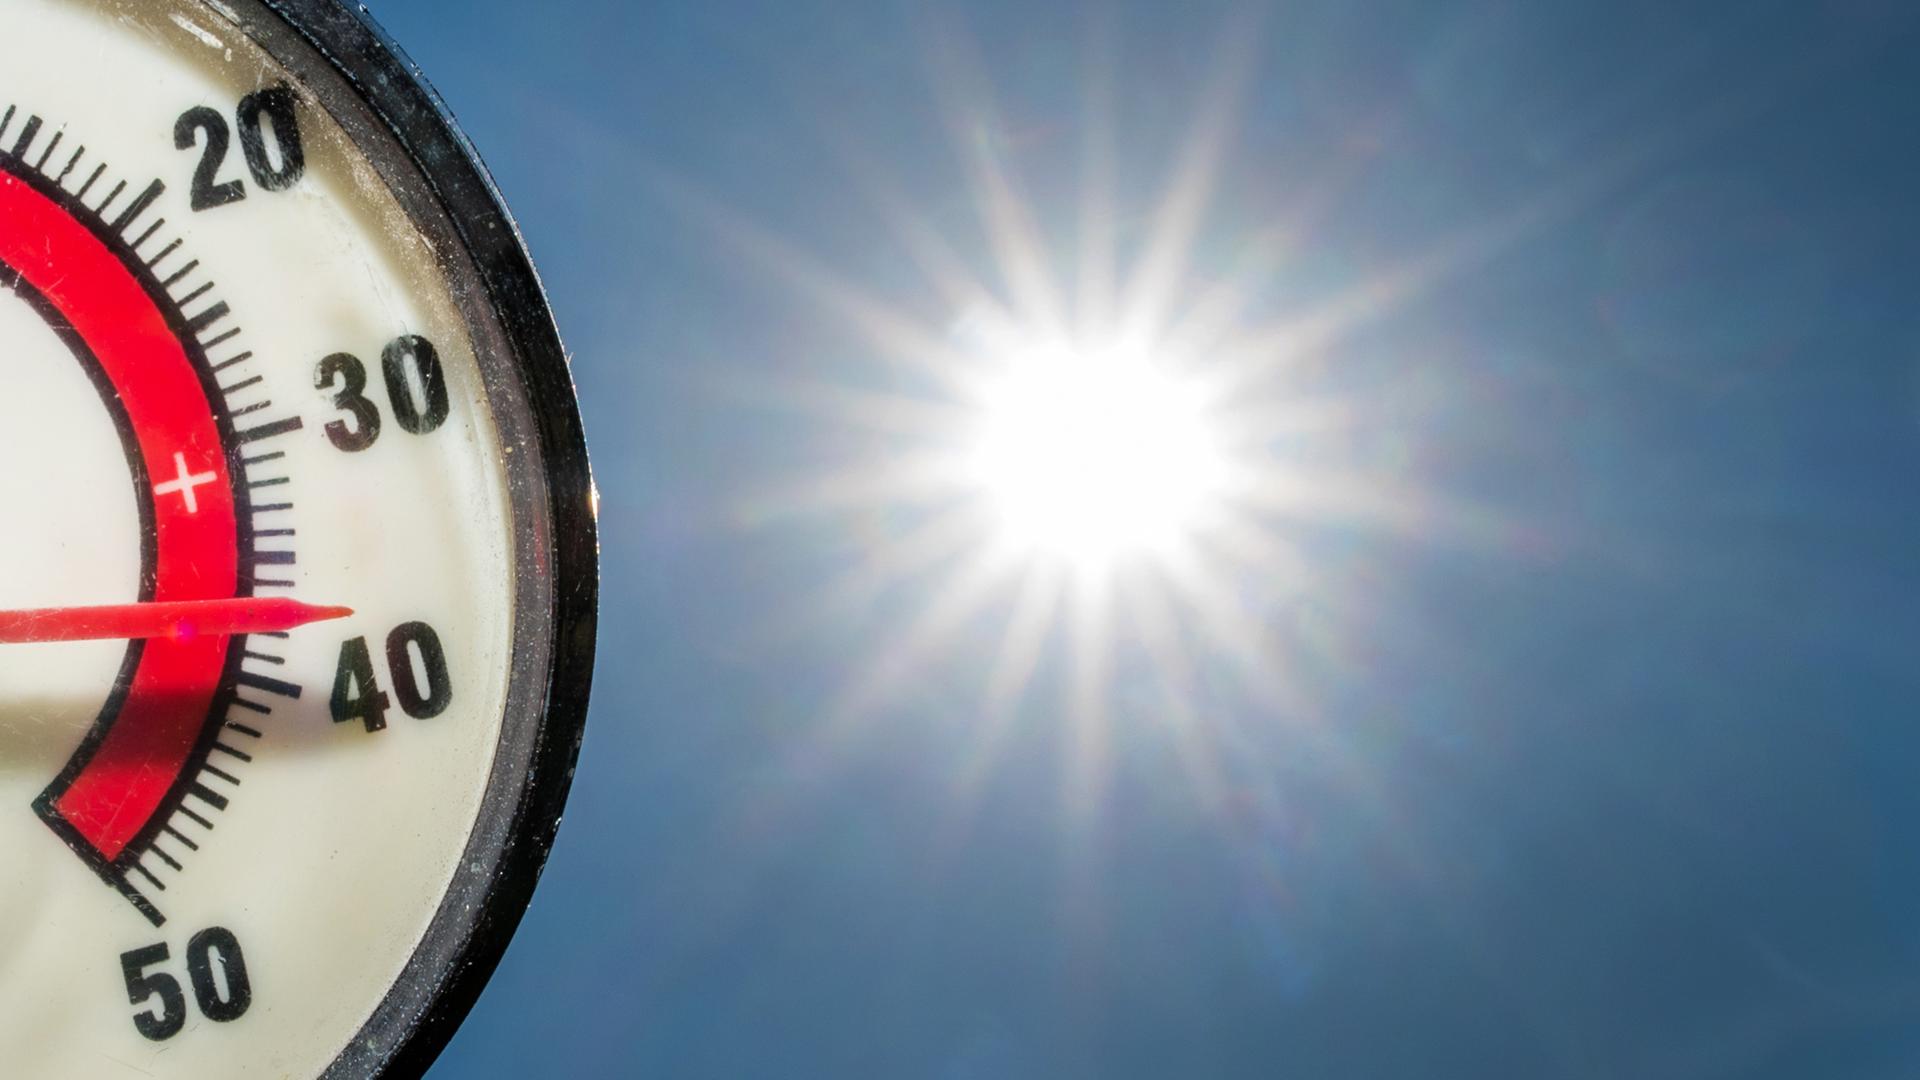 Archiv: Im Gegenlicht der Nachmittagssonne zeigt ein Thermometer 37 Grad Celsius an  04.07.2015  